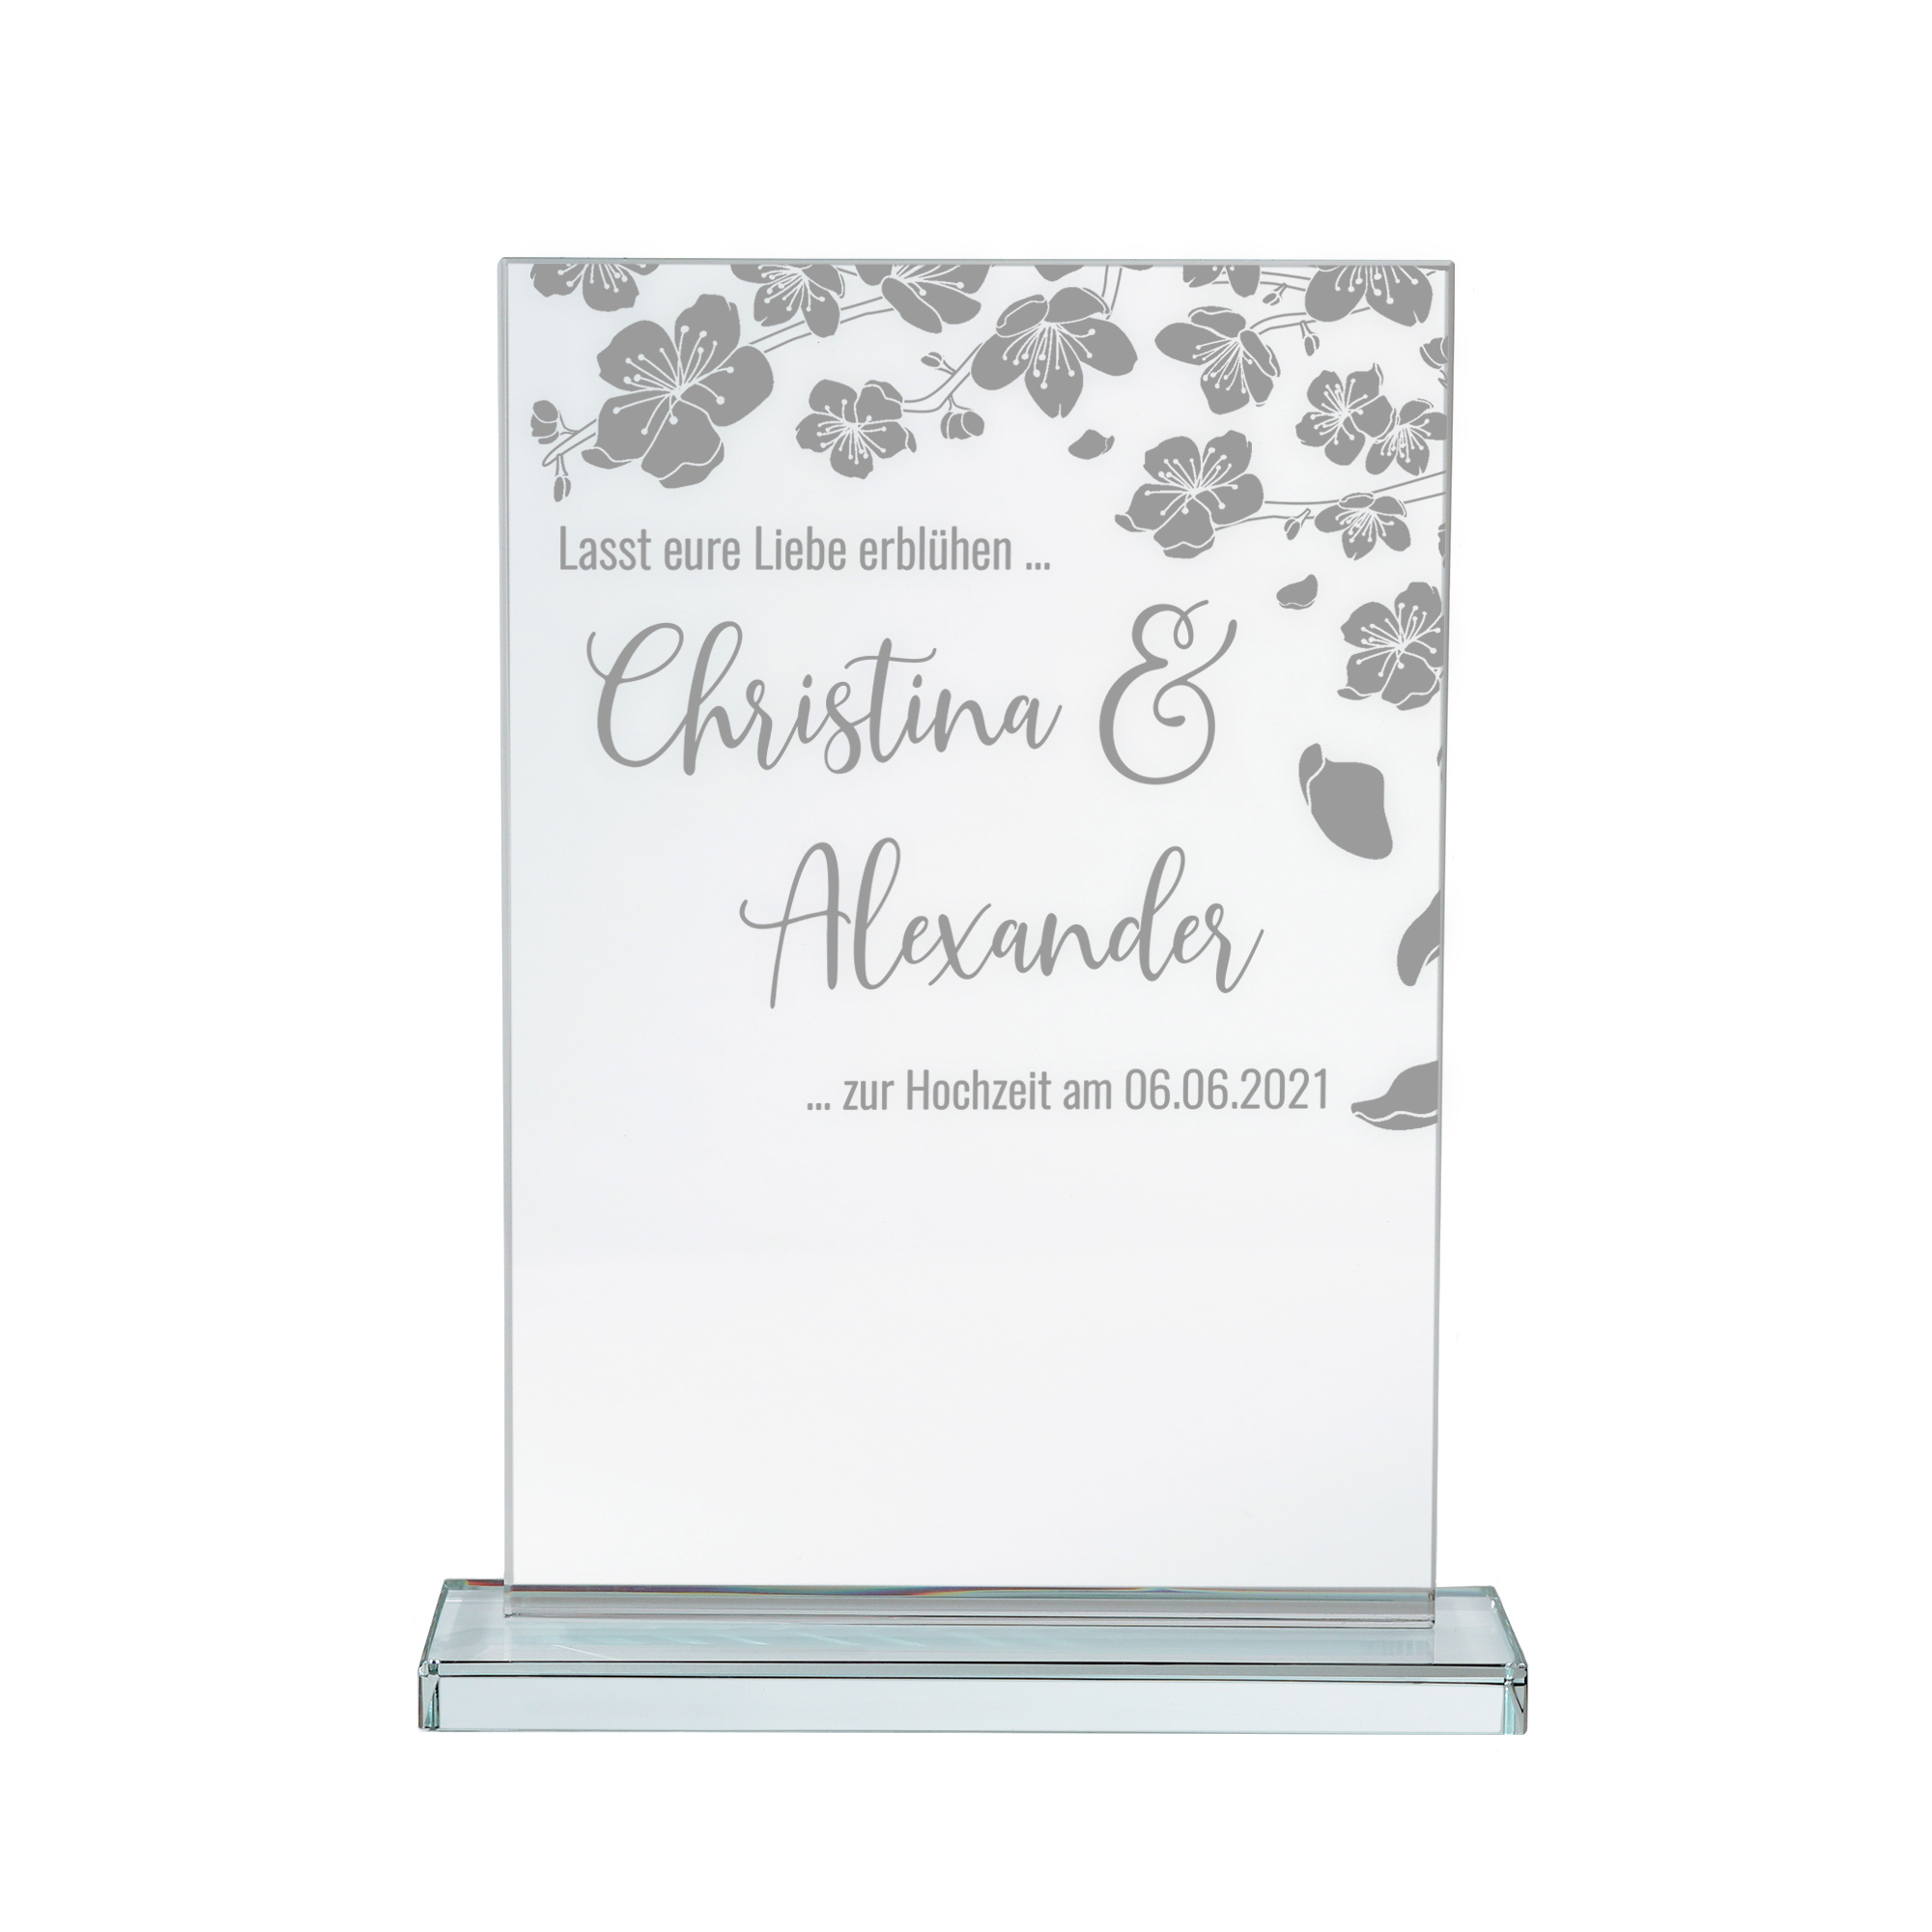 Glaspokal mit Gravur zur Hochzeit, personalisierte Glastrophäe mit Namen und Hochzeitsdatum, Pokal aus Glas, gravierte Auszeichnung und Hochzeitsdeko